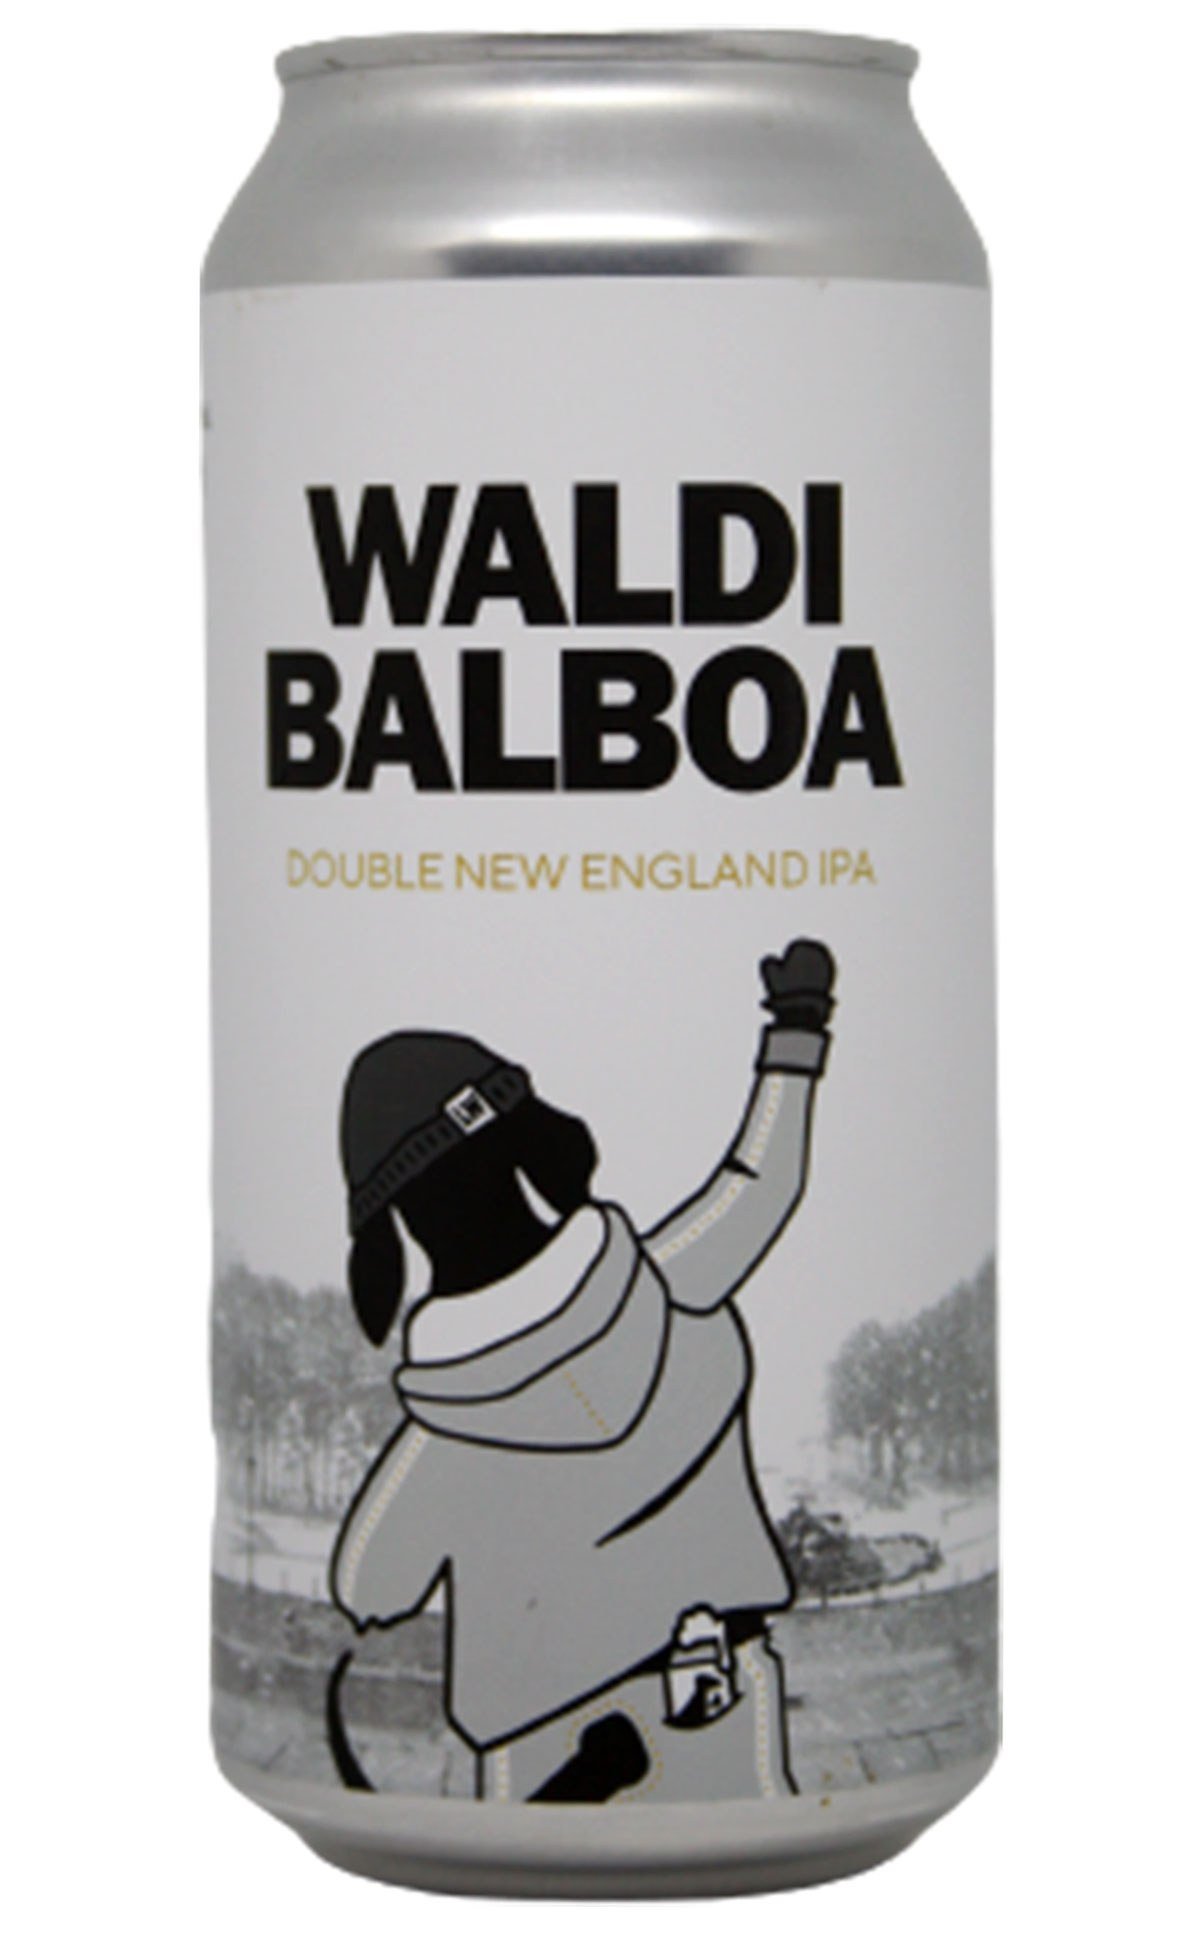 Waldi Balboa